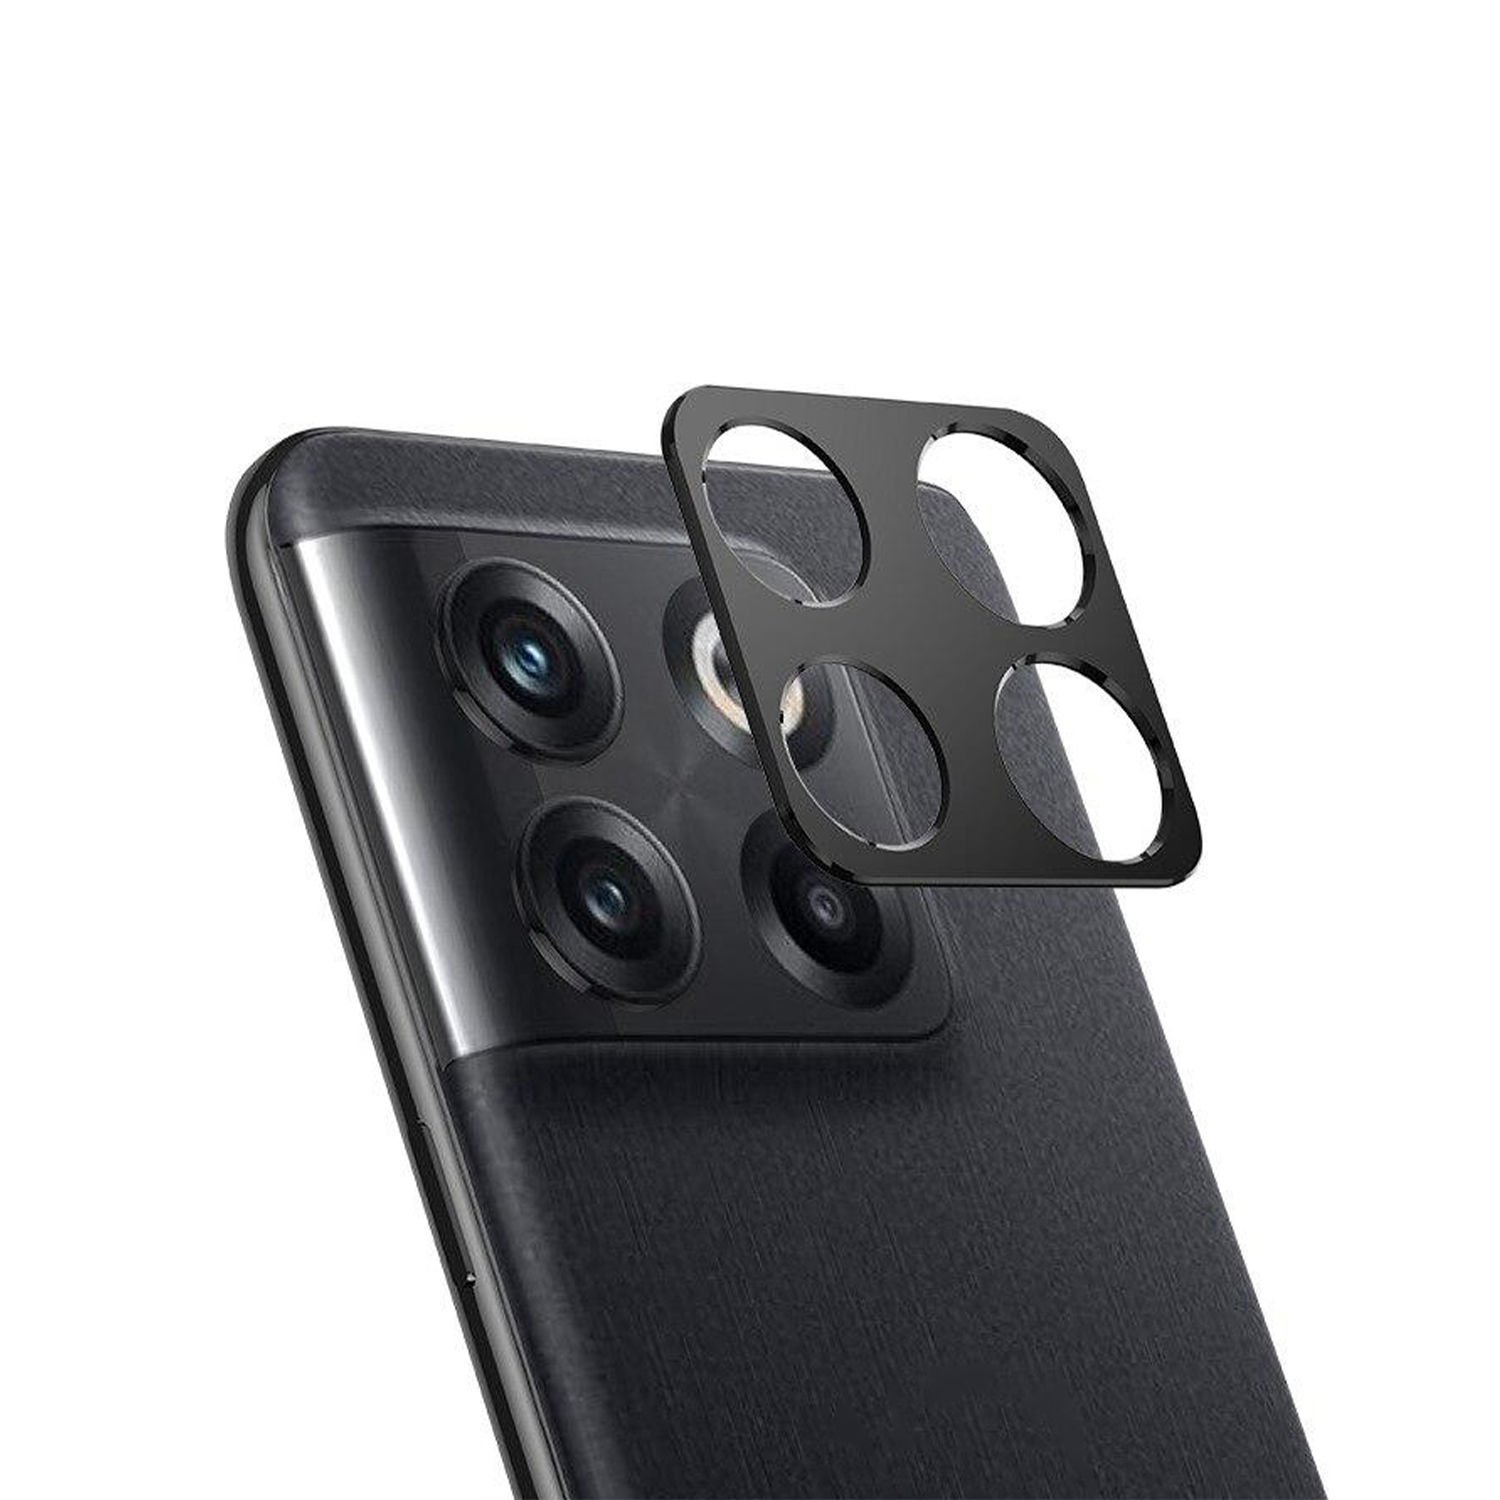 Microcase OnePlus Ace Pro / 11T Kamera Lens Koruma Halkası - Kapalı Tasarım Siyah AL3401